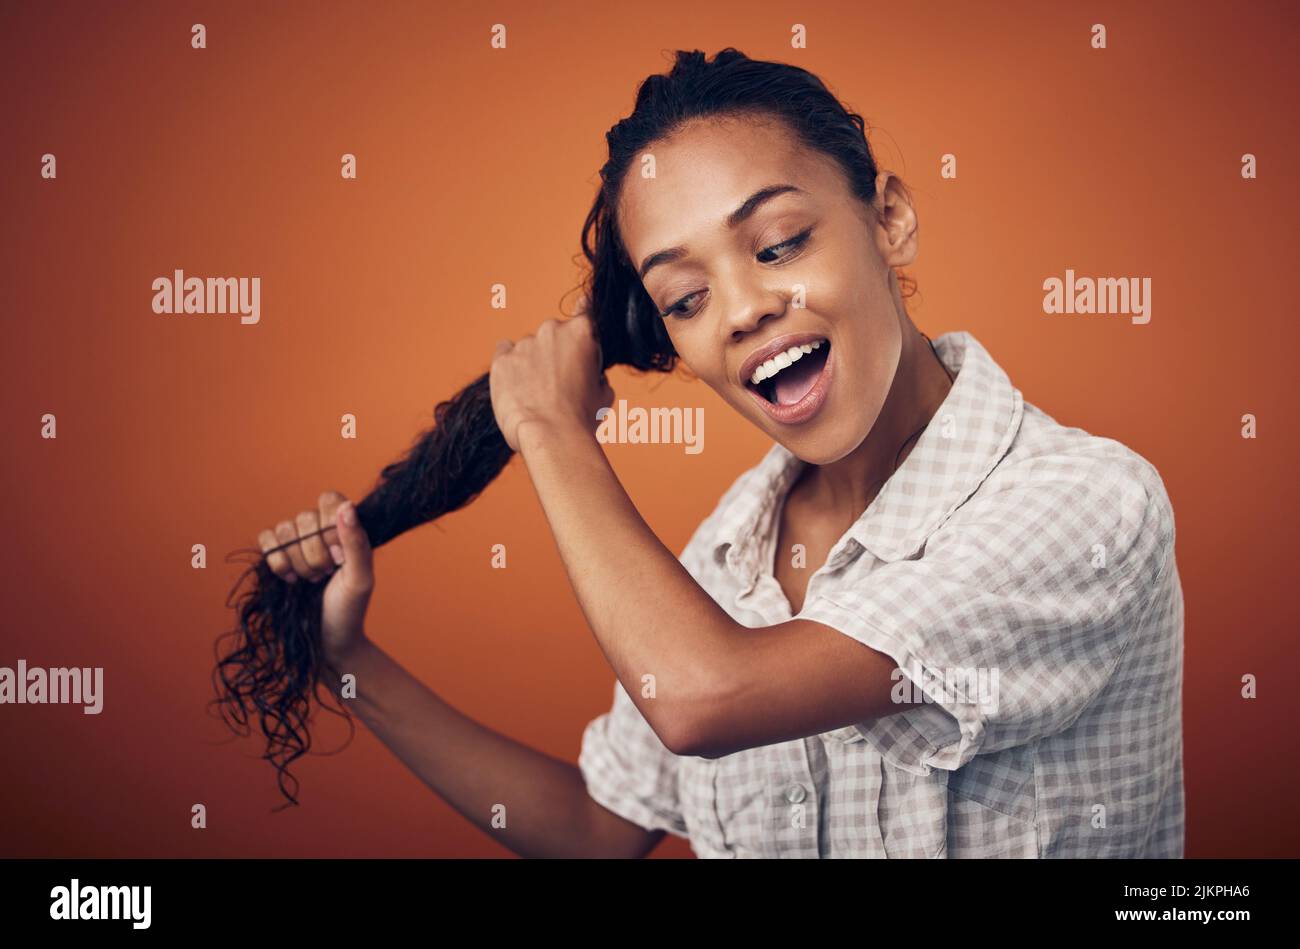 Ich bin dem Erreichen perfekter Locken einen Schritt näher. Eine junge Frau mit nassem Haar posiert vor einem orangen Hintergrund. Stockfoto